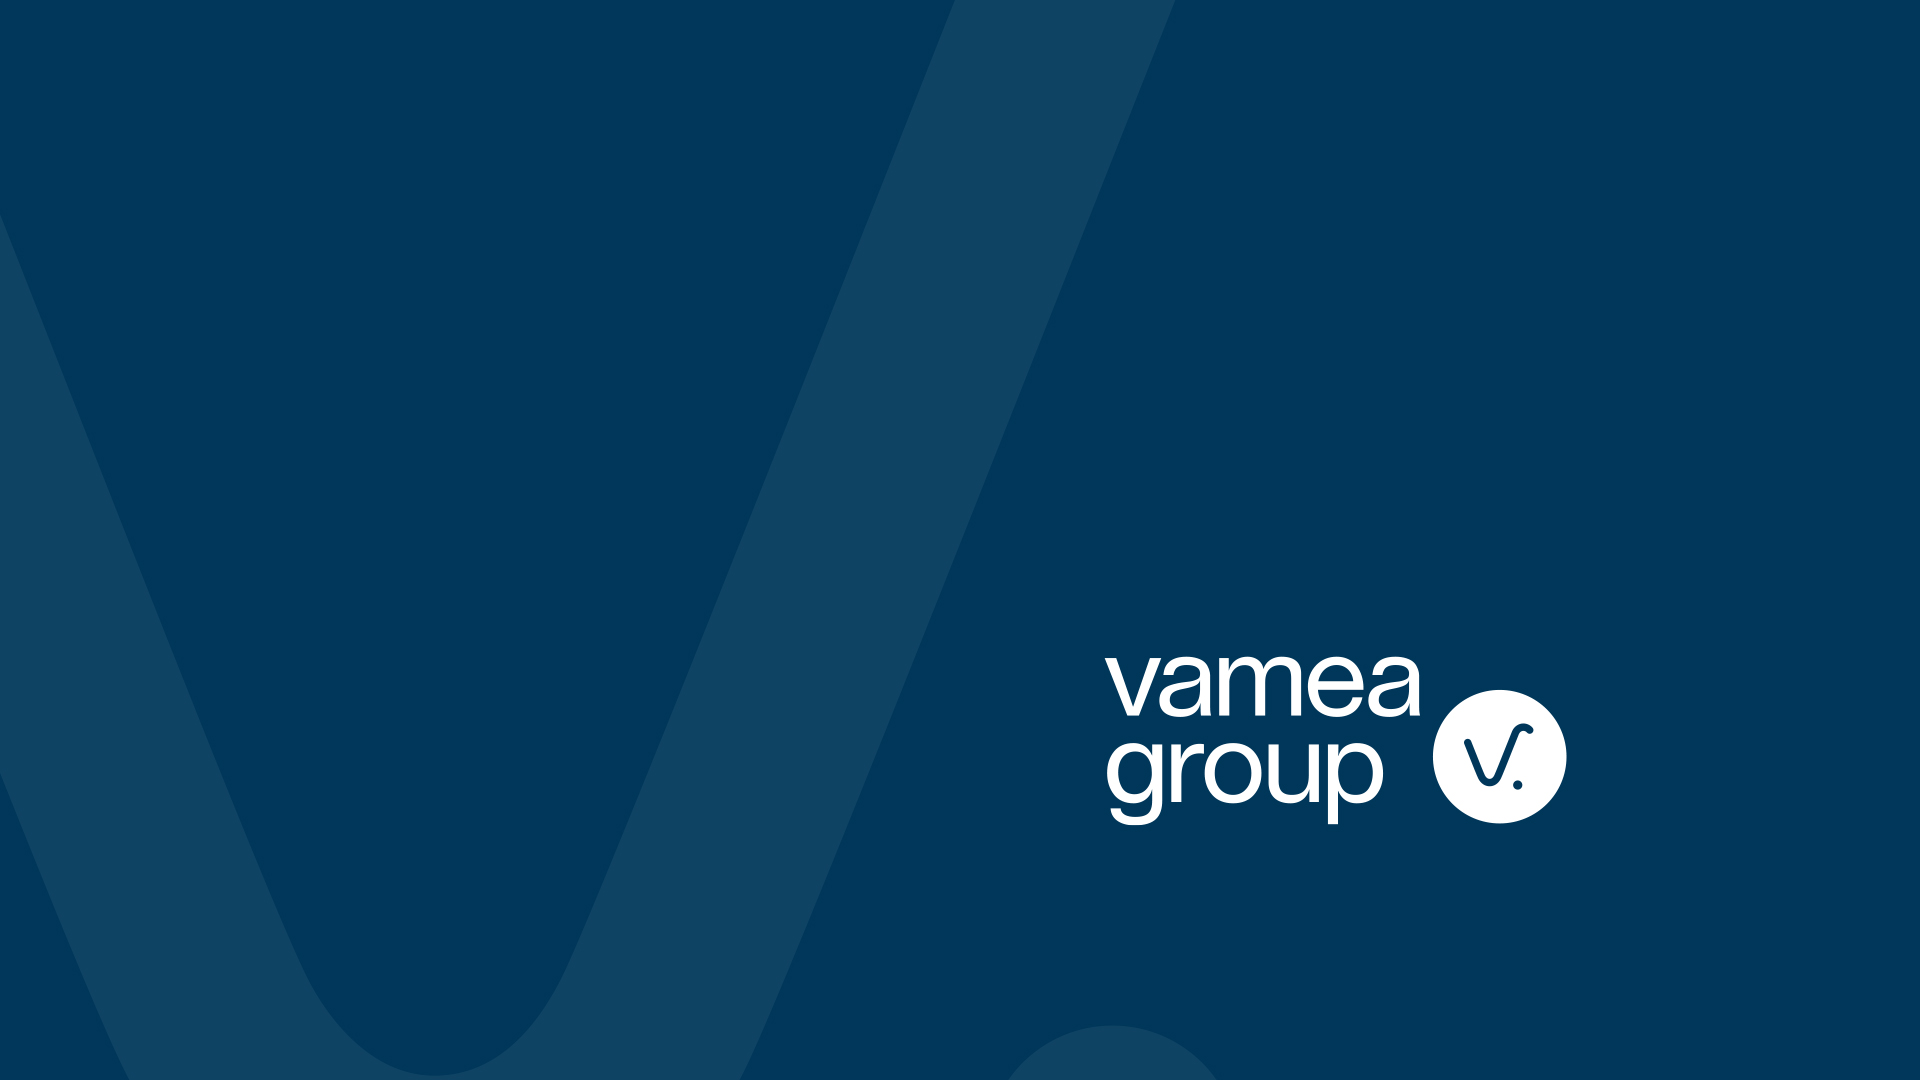 (c) Vamea.group